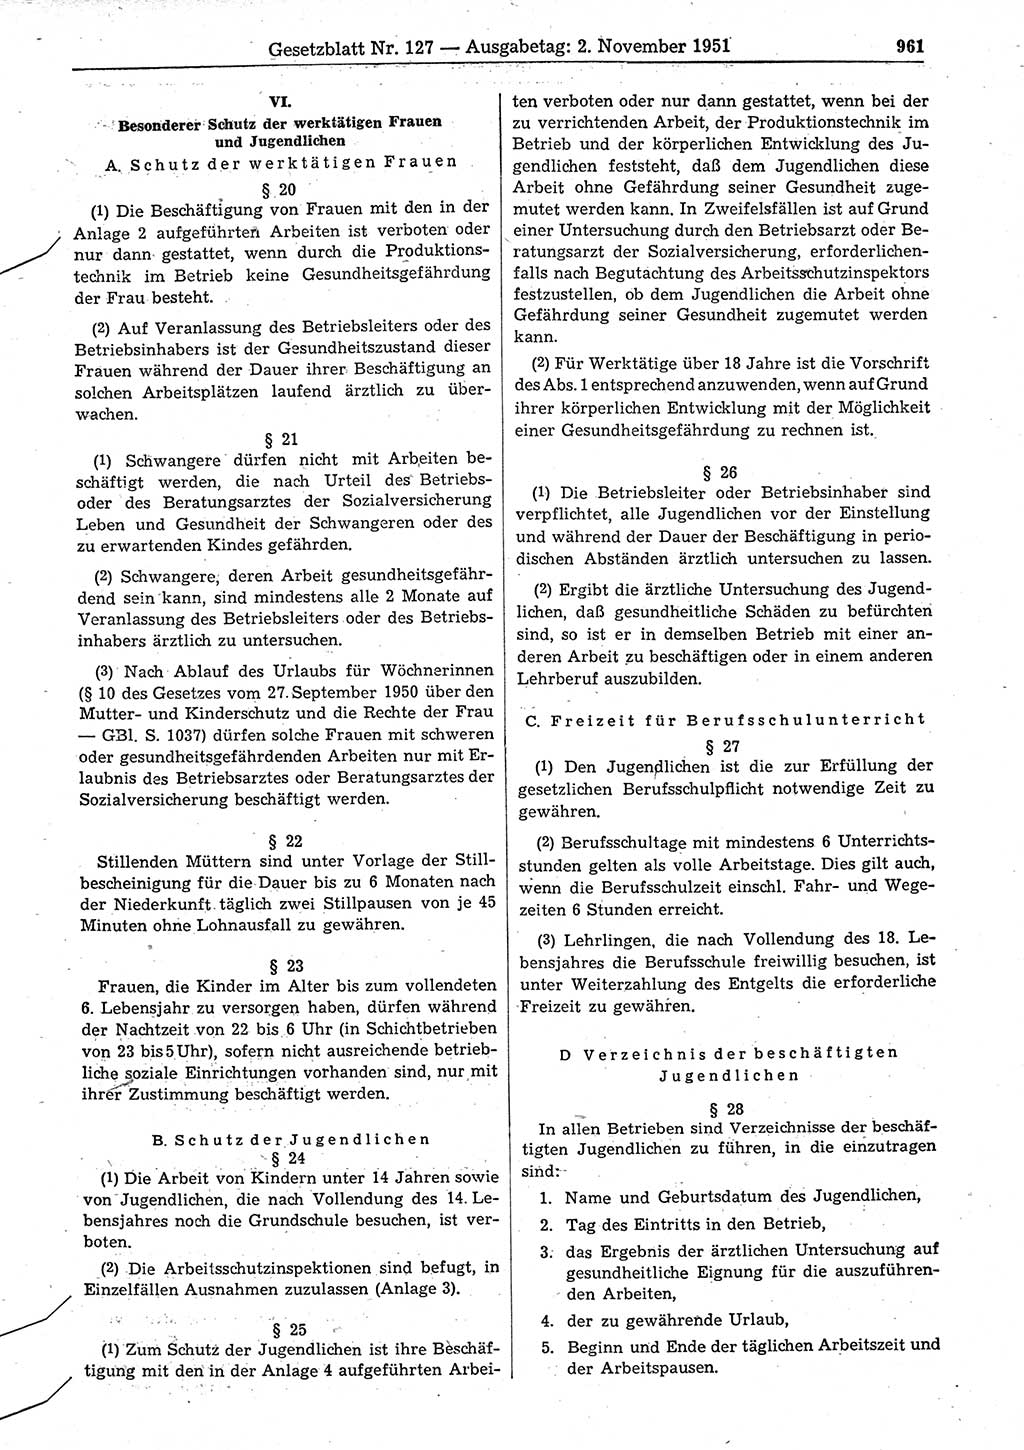 Gesetzblatt (GBl.) der Deutschen Demokratischen Republik (DDR) 1951, Seite 961 (GBl. DDR 1951, S. 961)